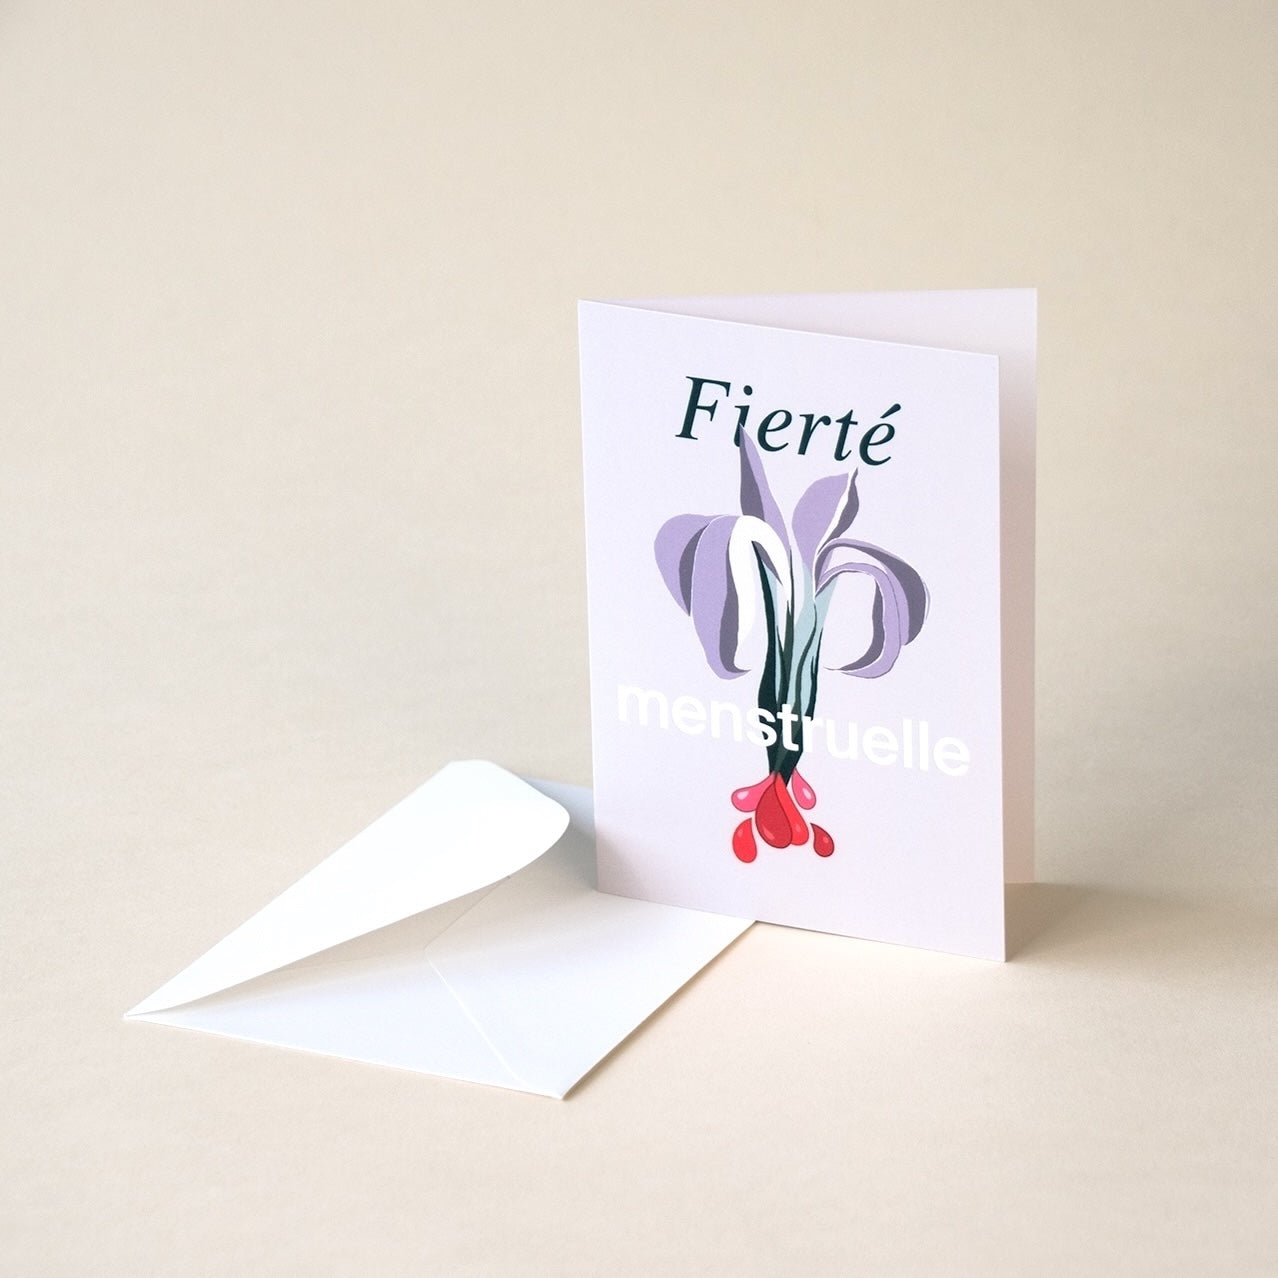 Iris + Arlo - Greetings Cards - Fierté